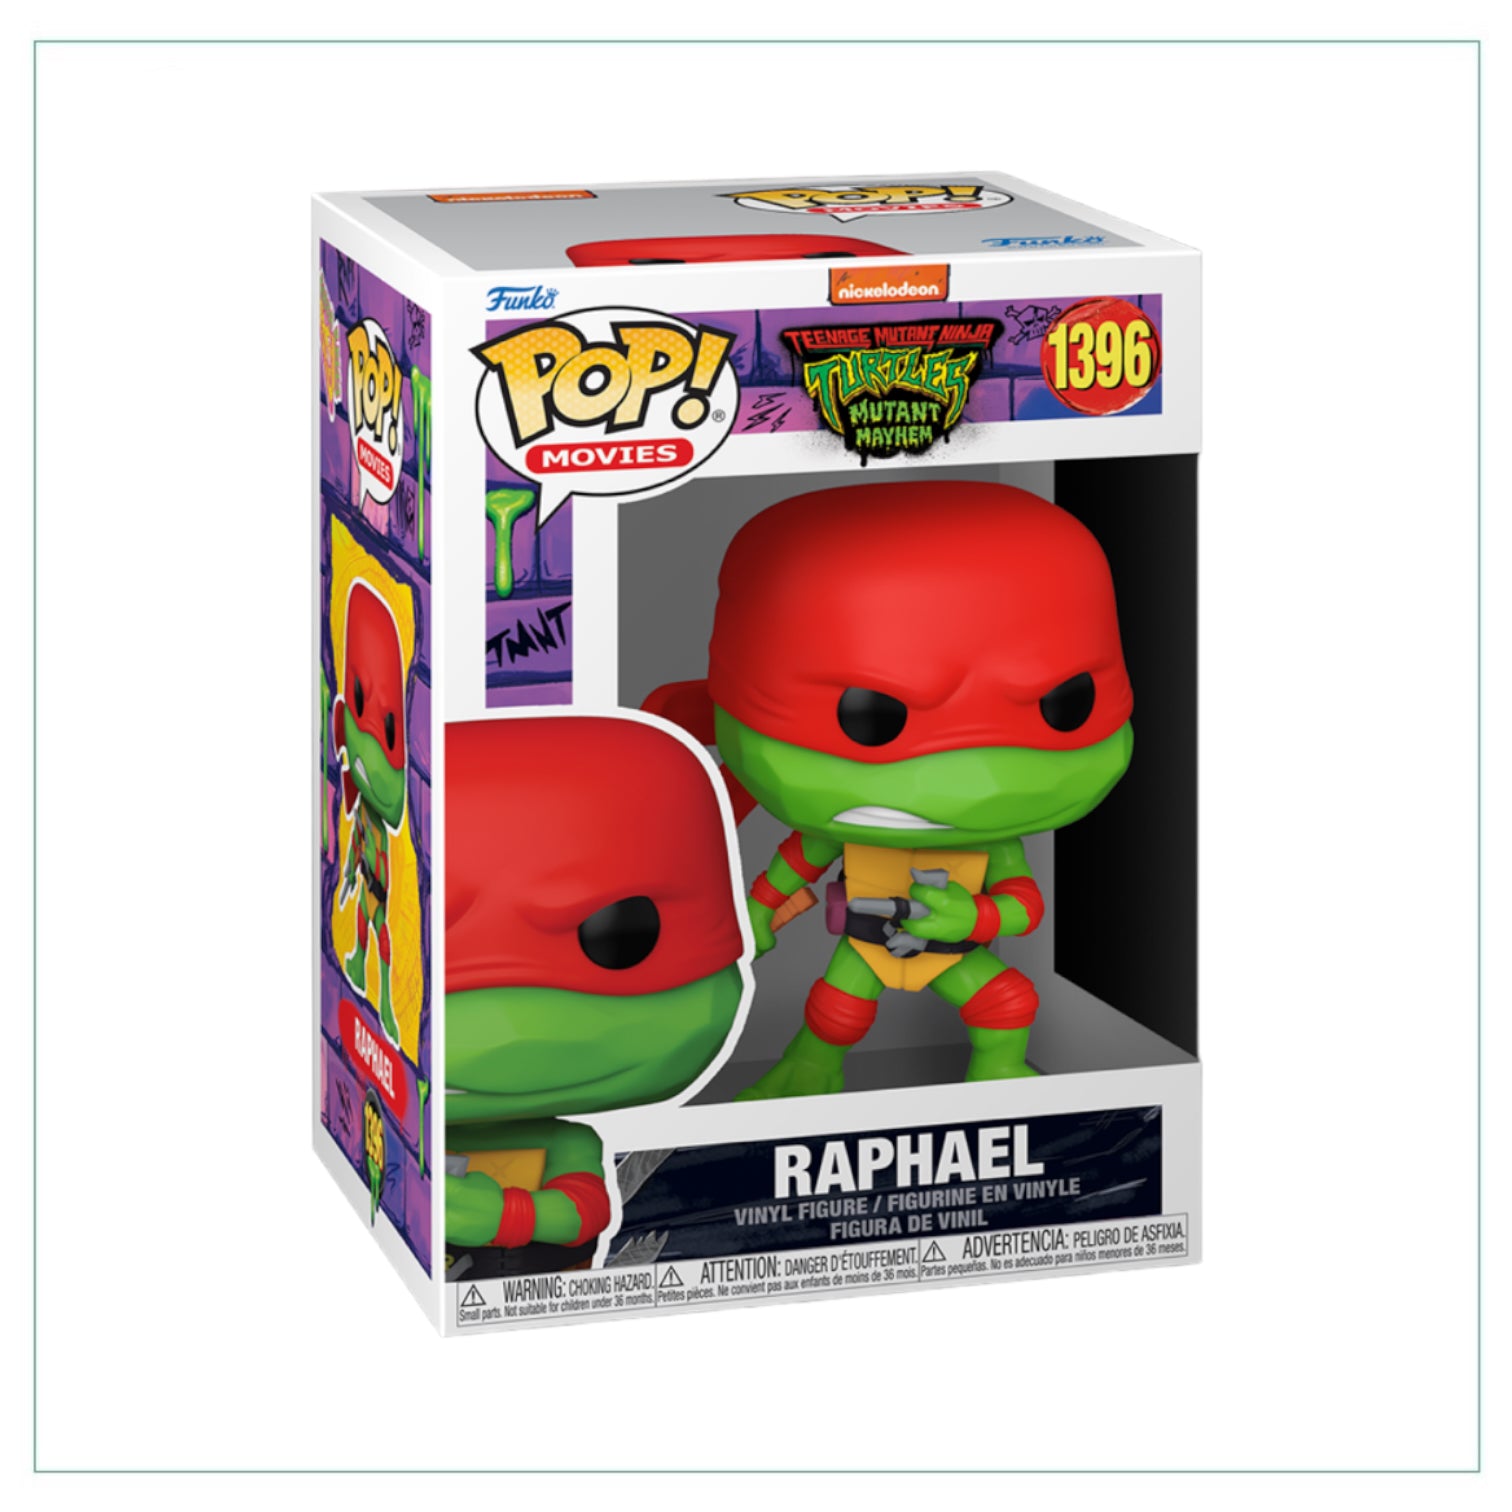 Raphael #1396 Funko Pop! Teenage Mutant Ninja Turtles Mutant Mayhem